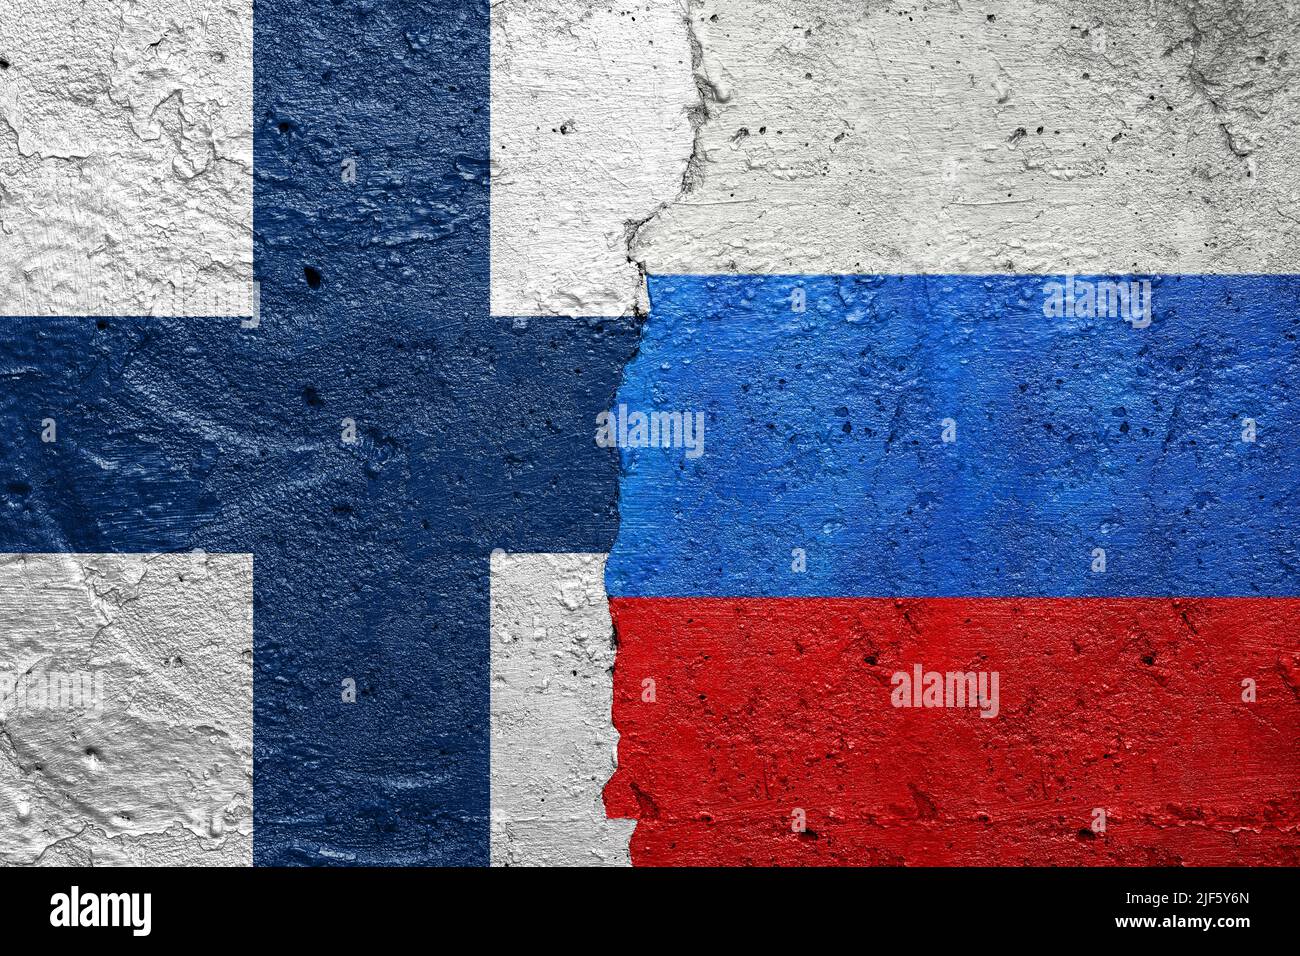 Finlande contre Russie - mur de béton fissuré peint avec un drapeau Finlandien à gauche et un drapeau russe à droite Banque D'Images